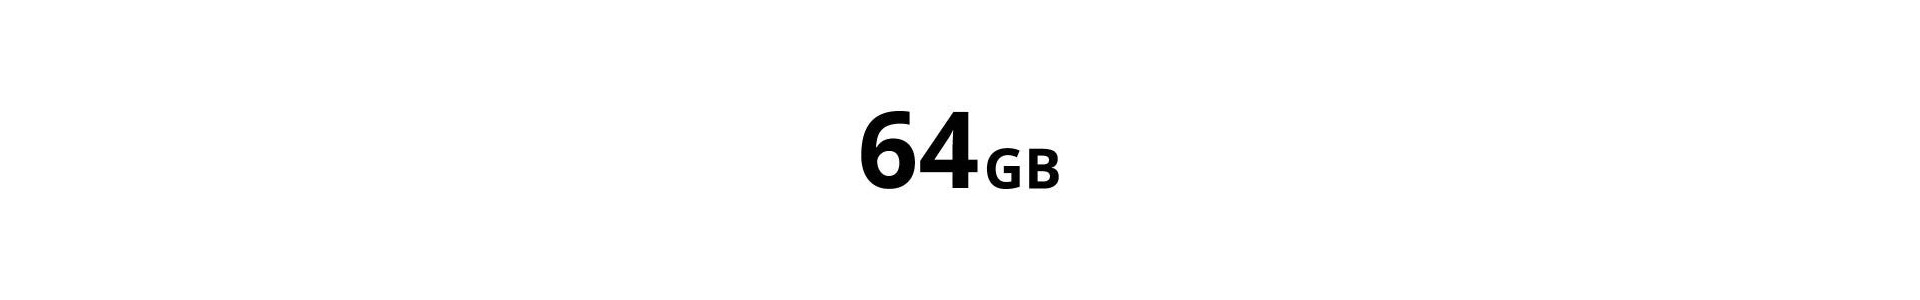 SD Card 64GB